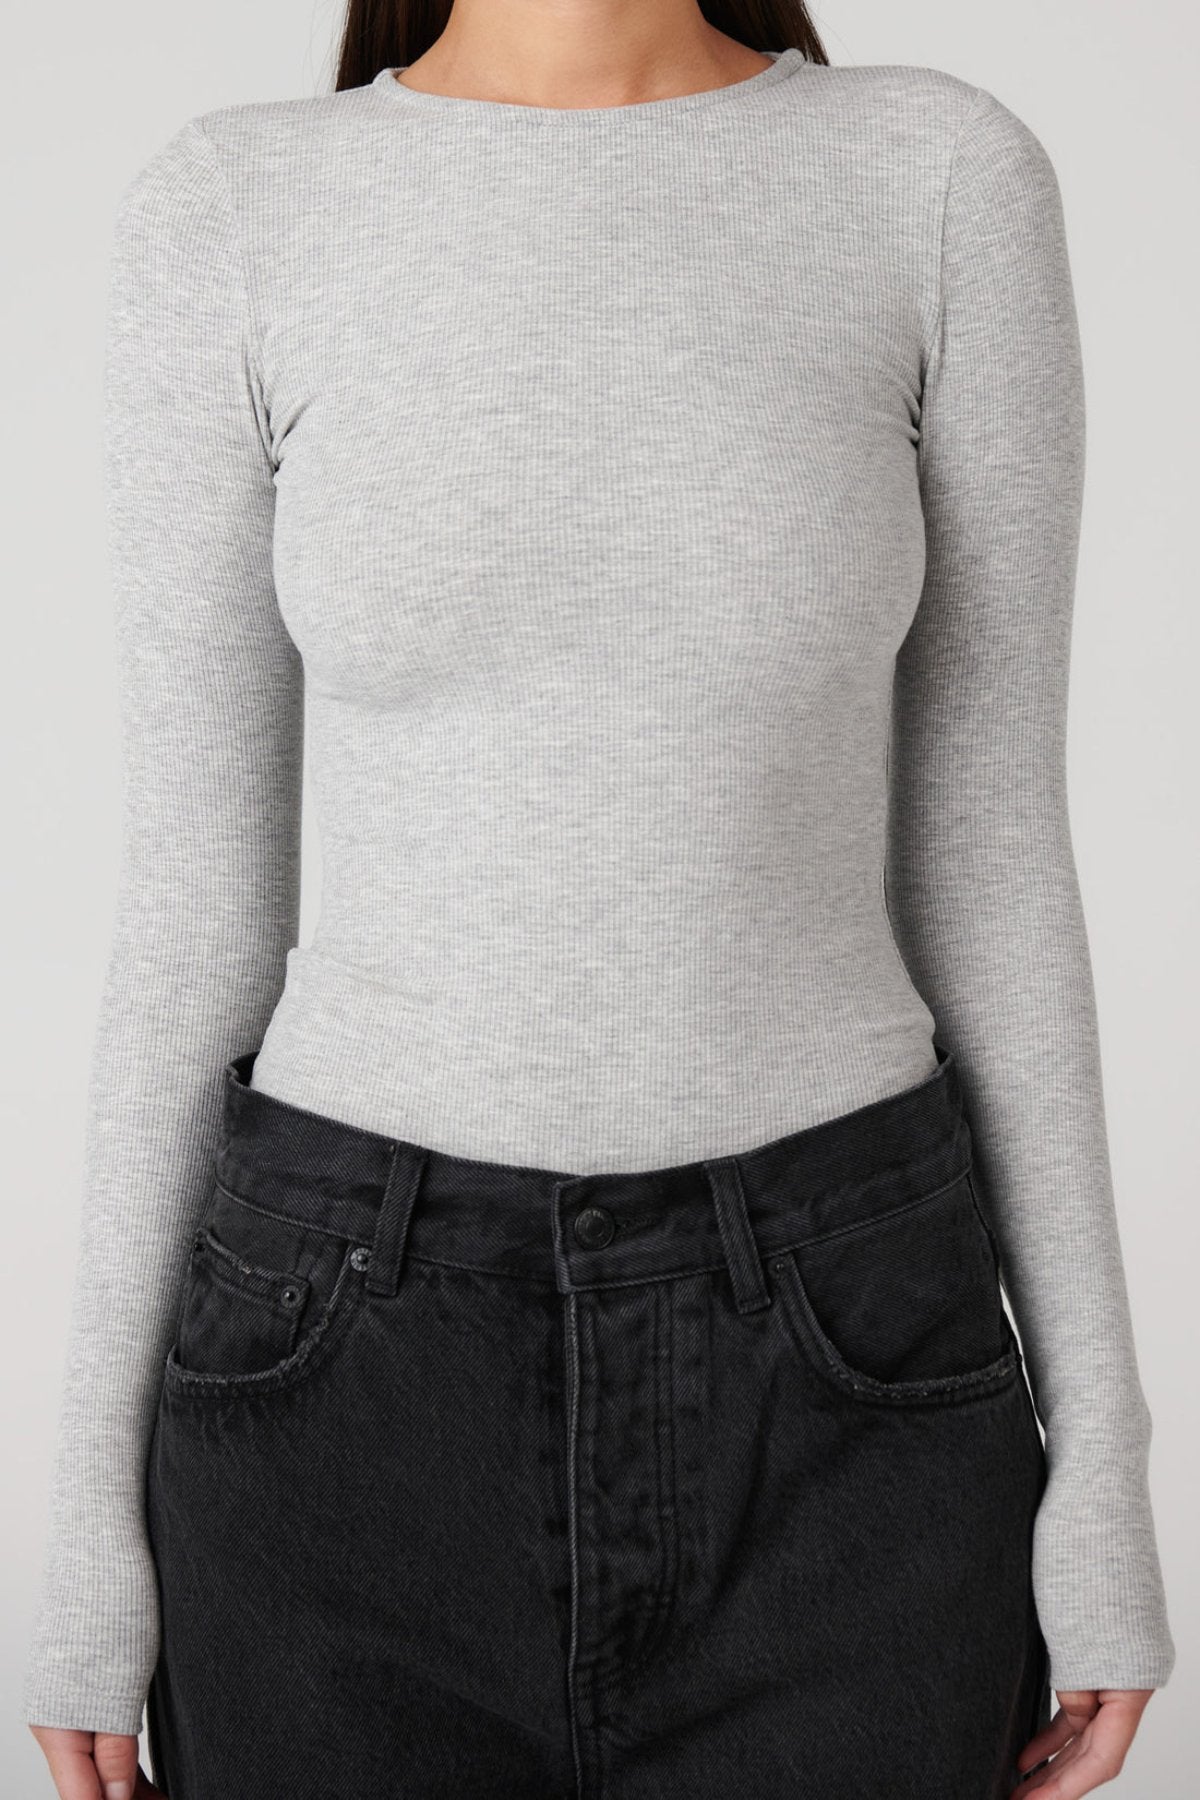 Elise Bodysuit - Grey Marle - Sare StoreBayse BrandBodysuit